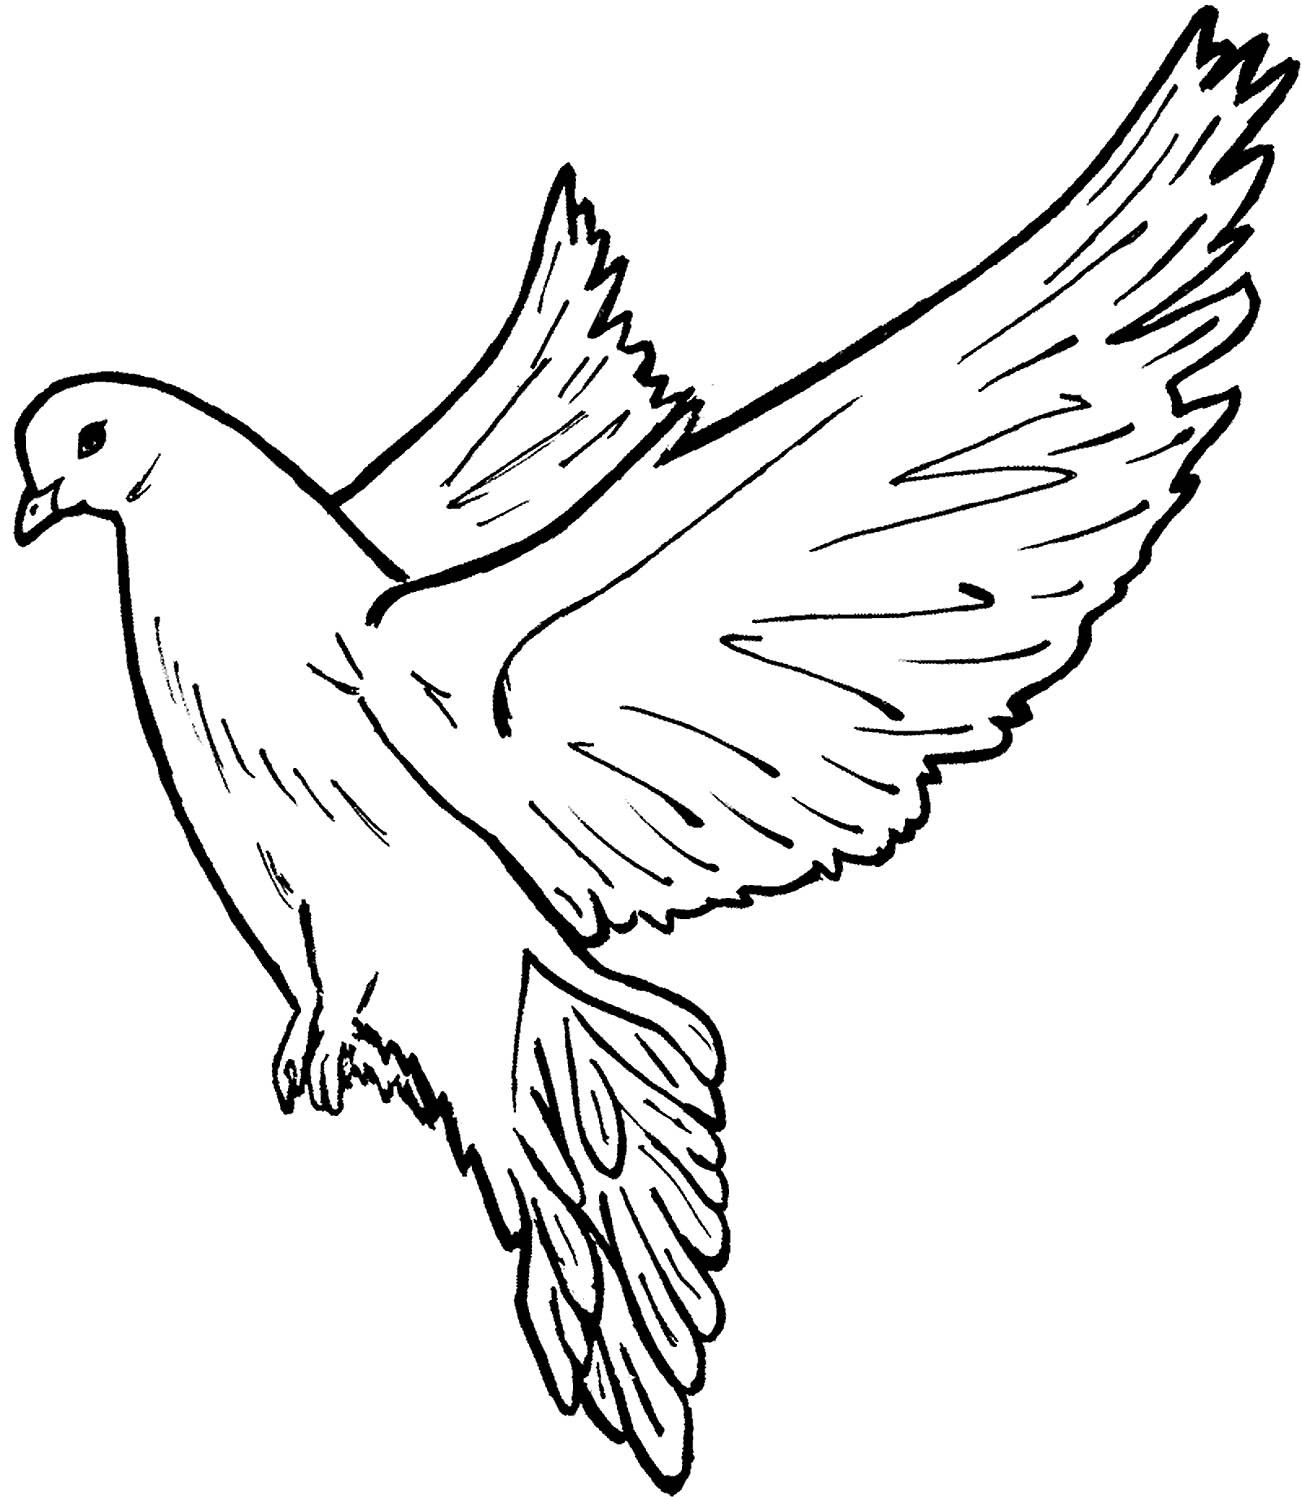 Раскраска Почтовый голубь, скачать и распечатать раскраску раздела Птицы